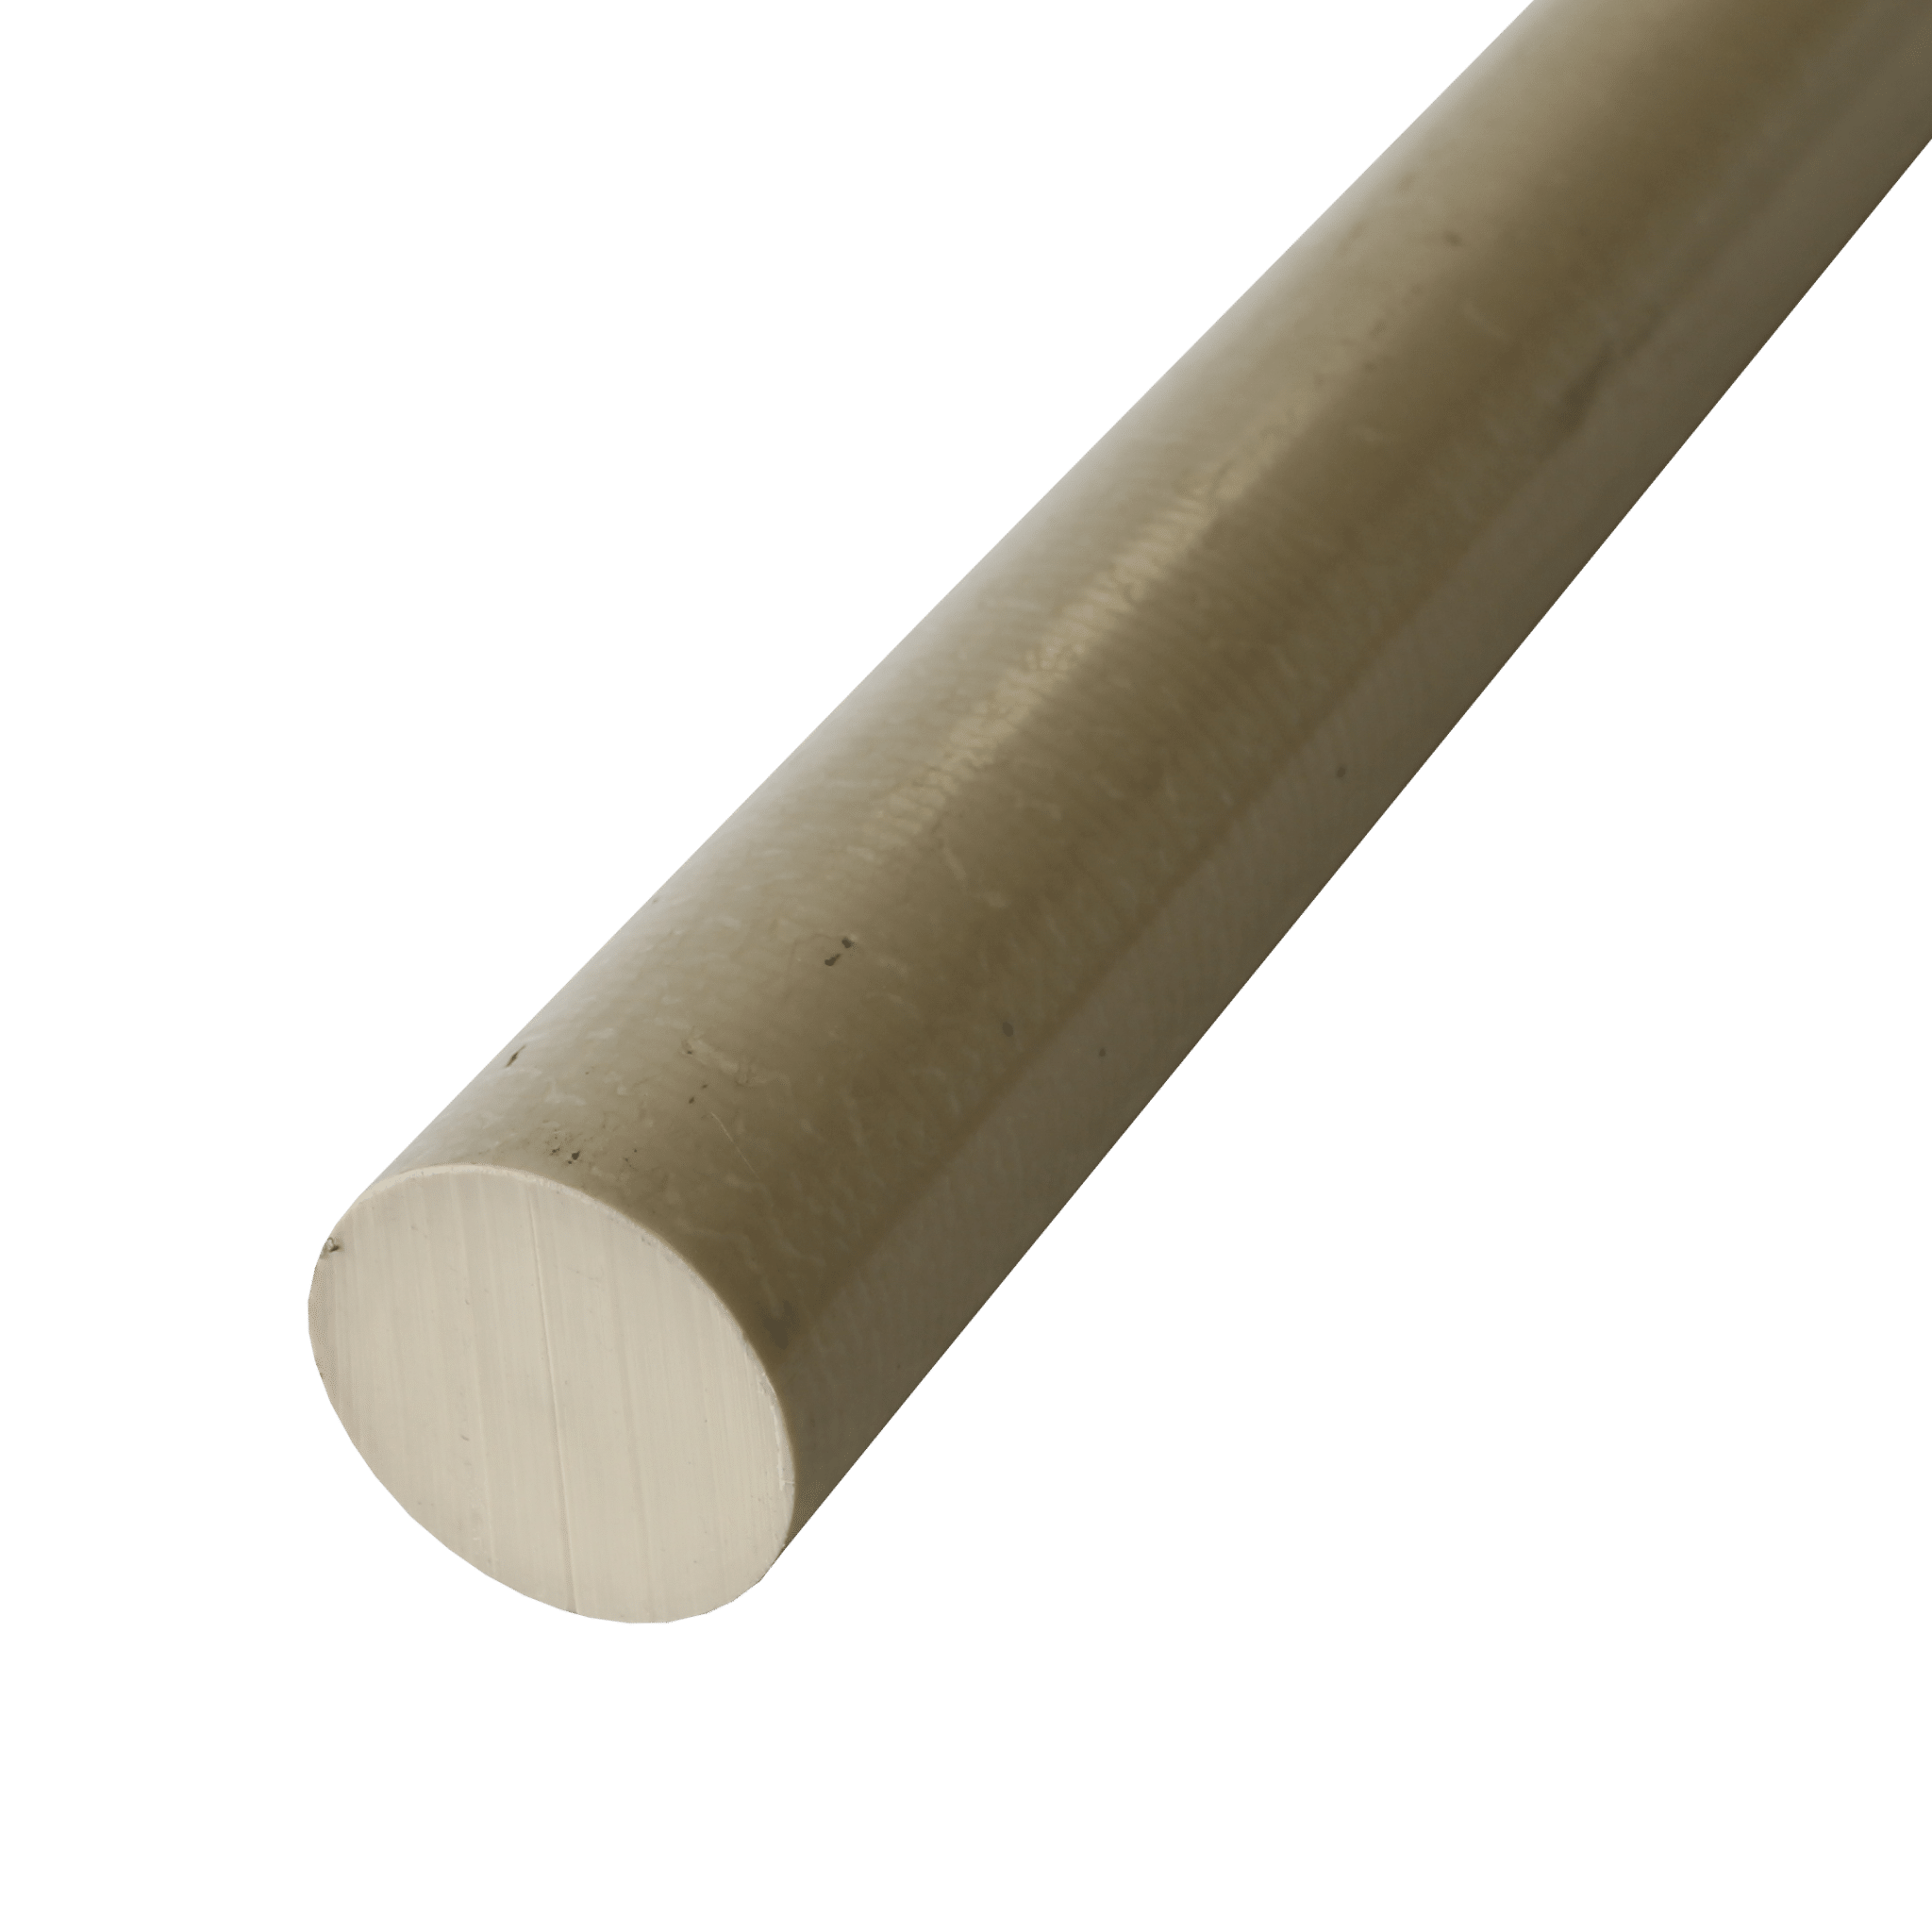 25mm Diameter X 1Metre Length Natural Peek Plastic Rod 